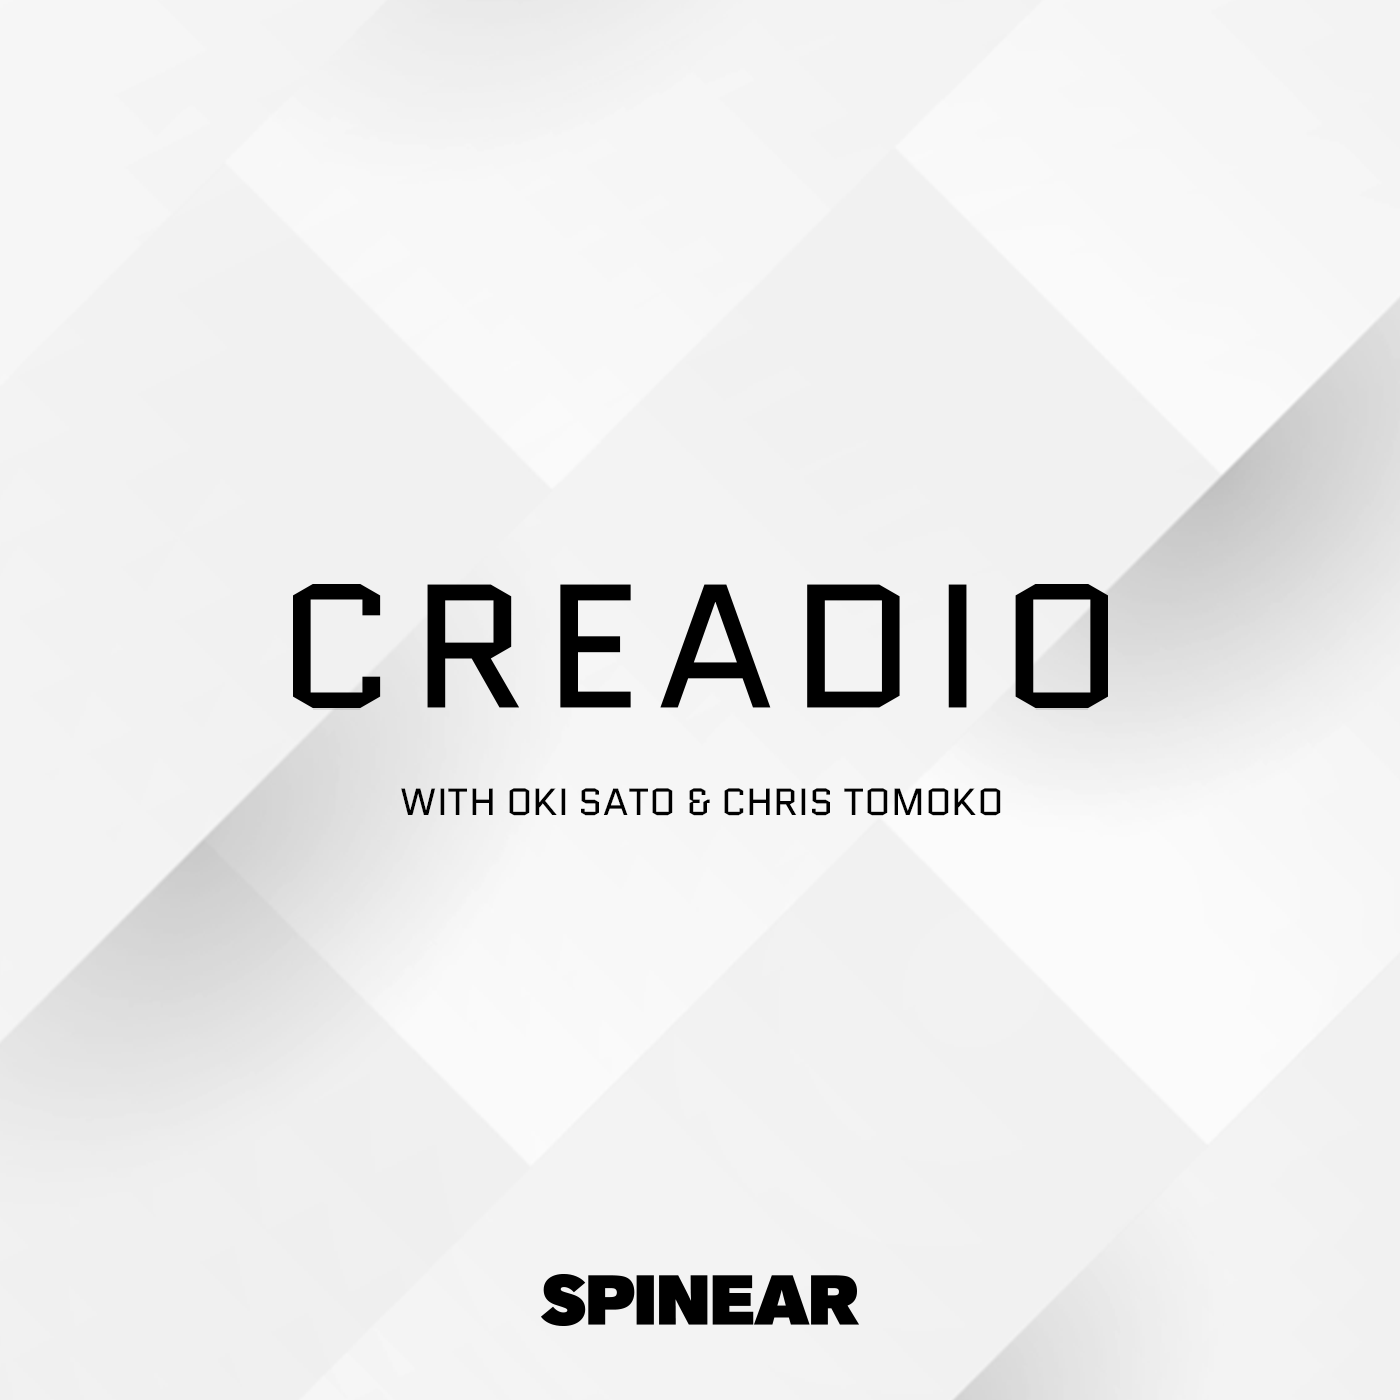 EPISODE 6 - CREADIO